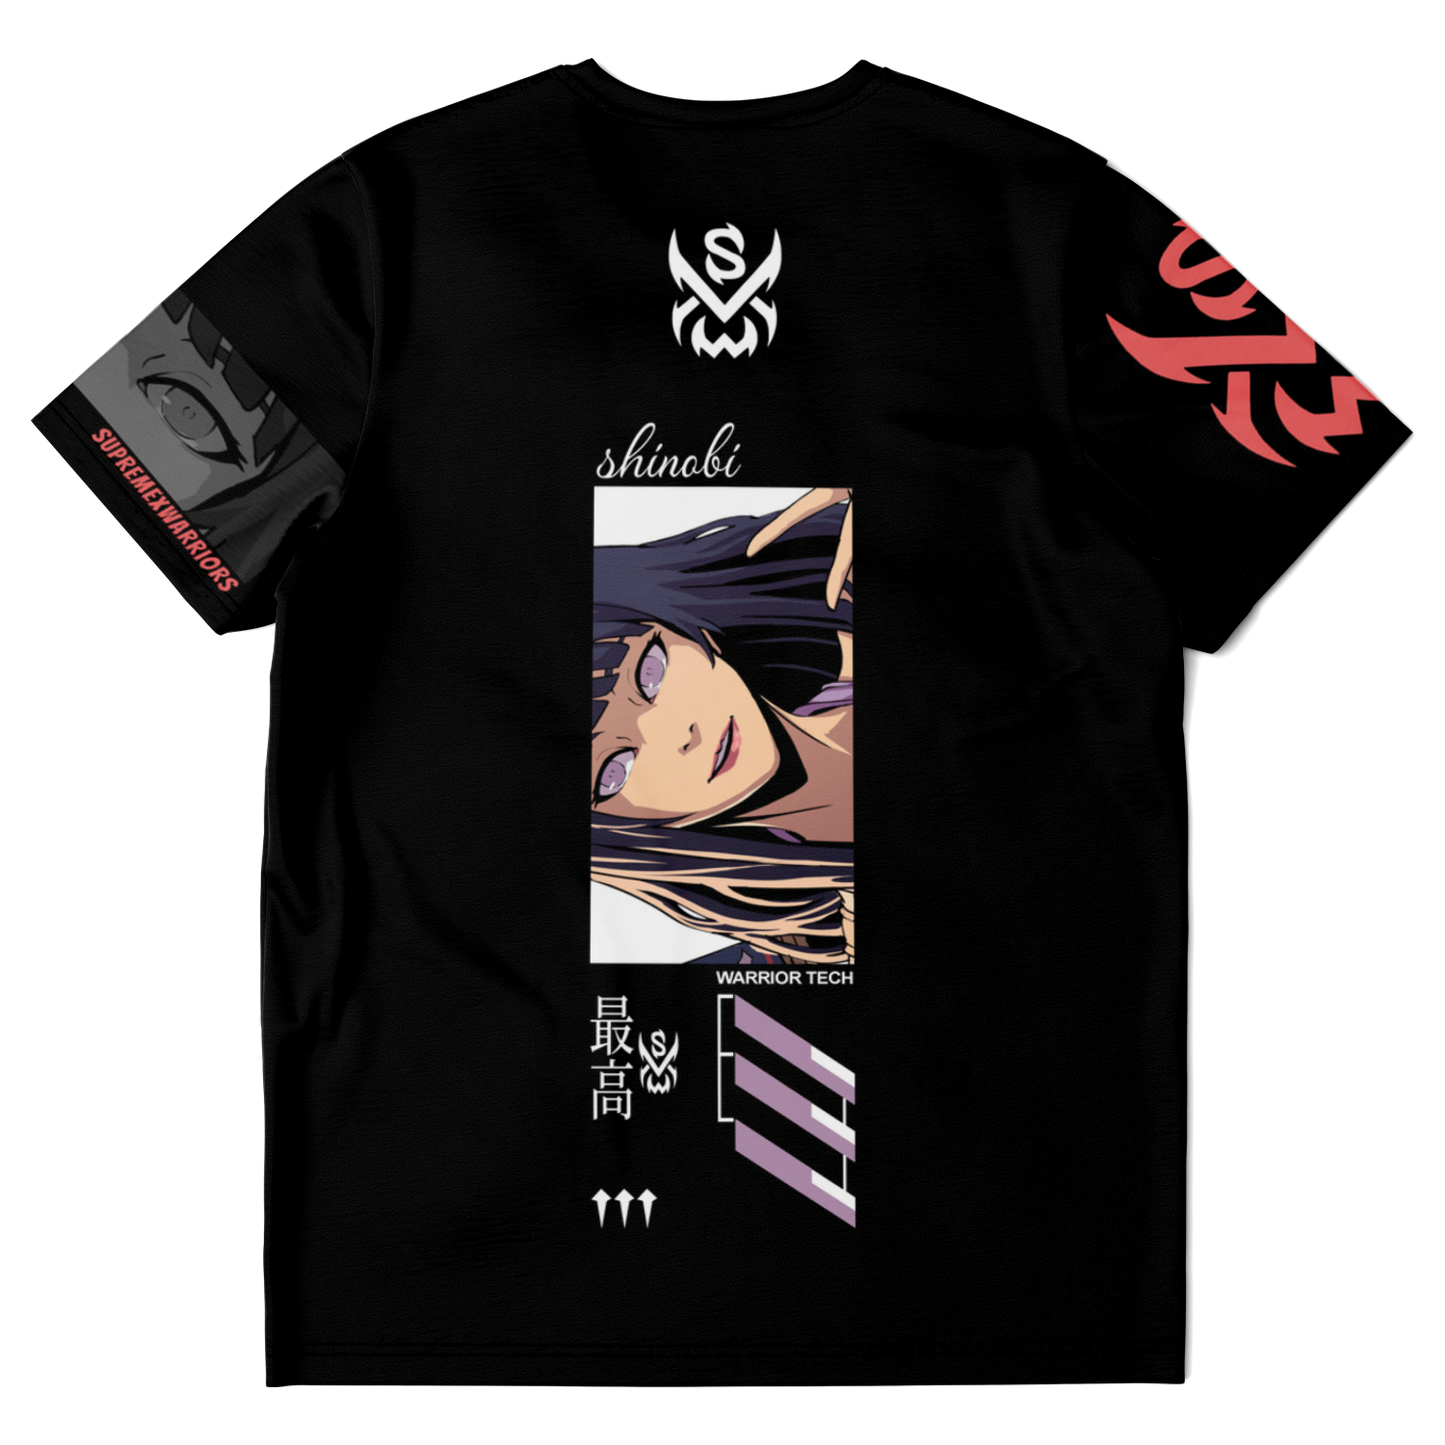 SUPREMEXWARRIORS - "Shinobi Girl" Jersey T-shirt